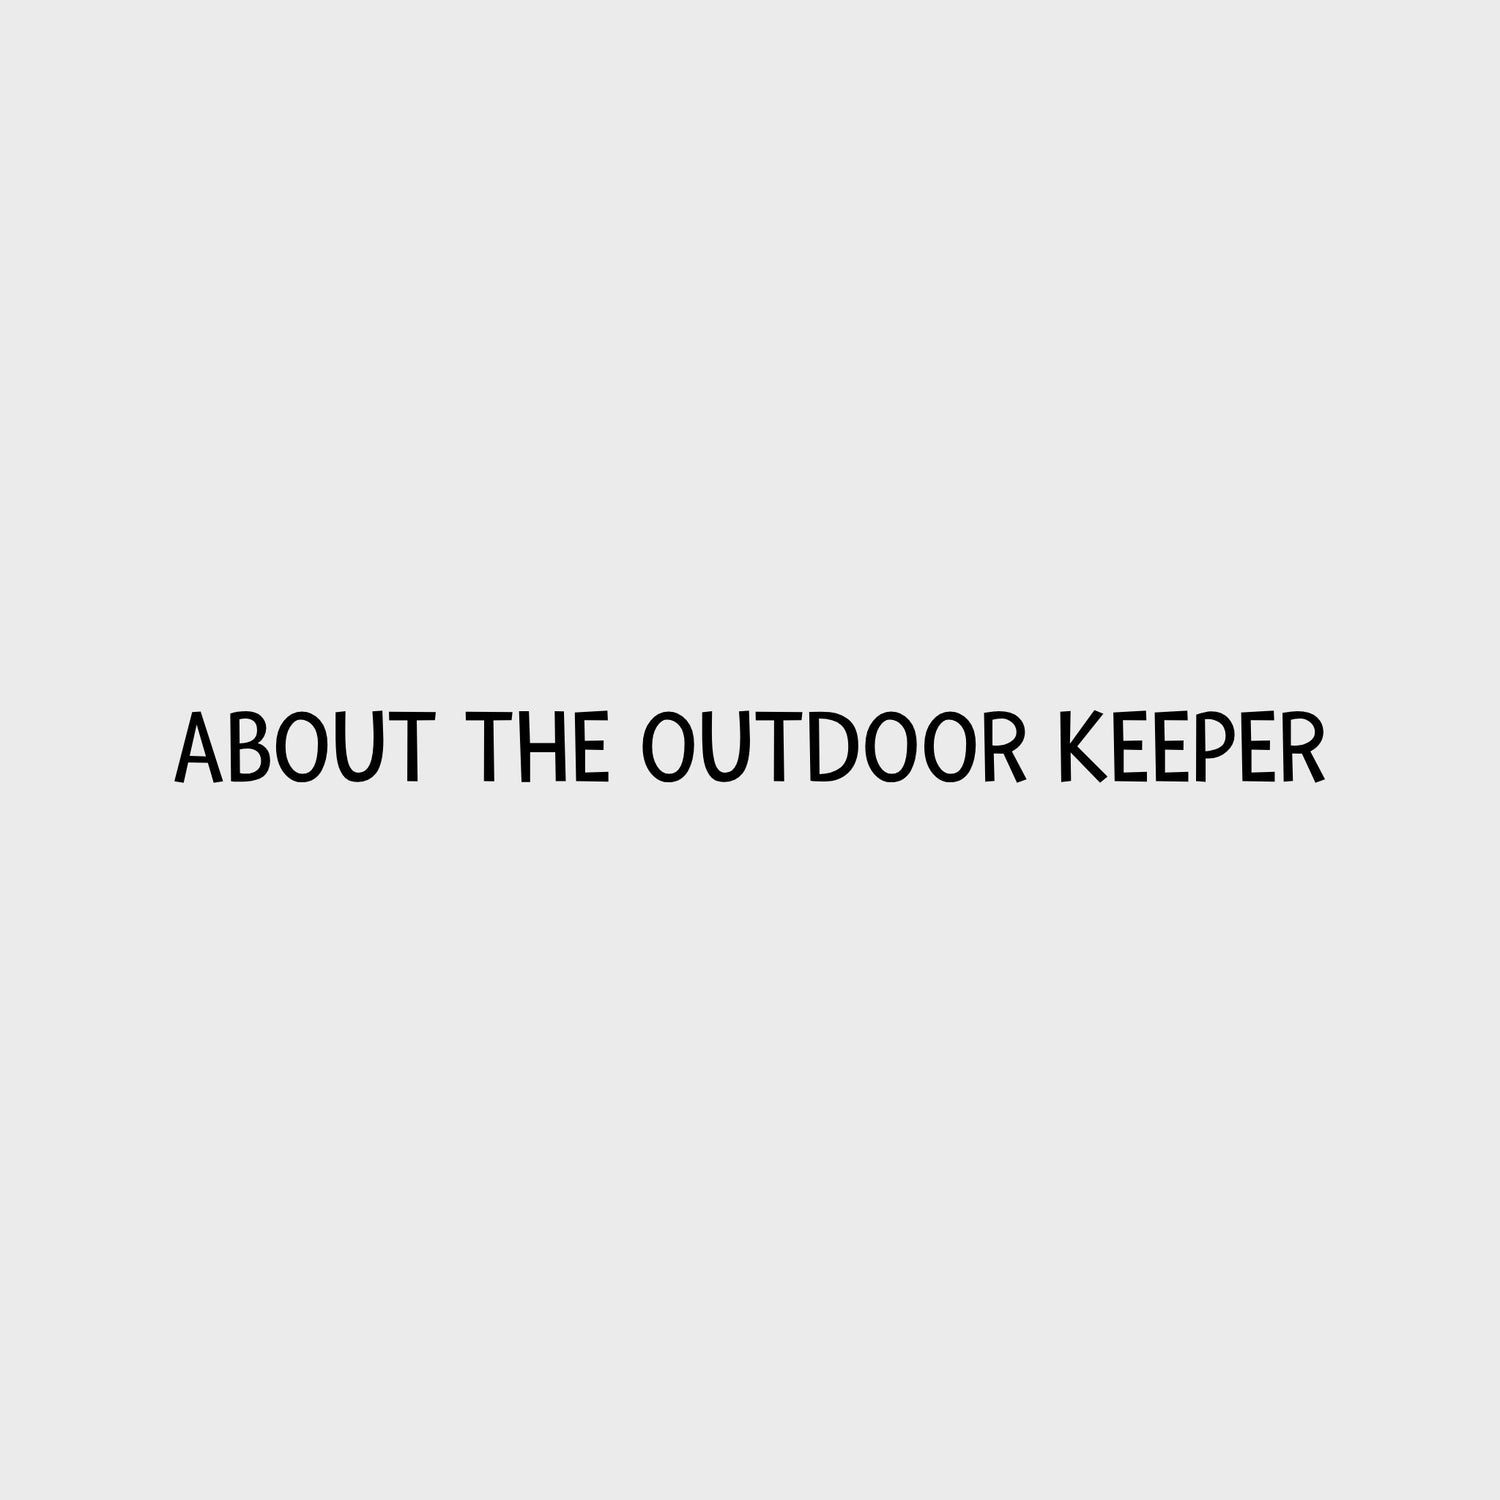 Video - LickiMat Outdoor Keeper